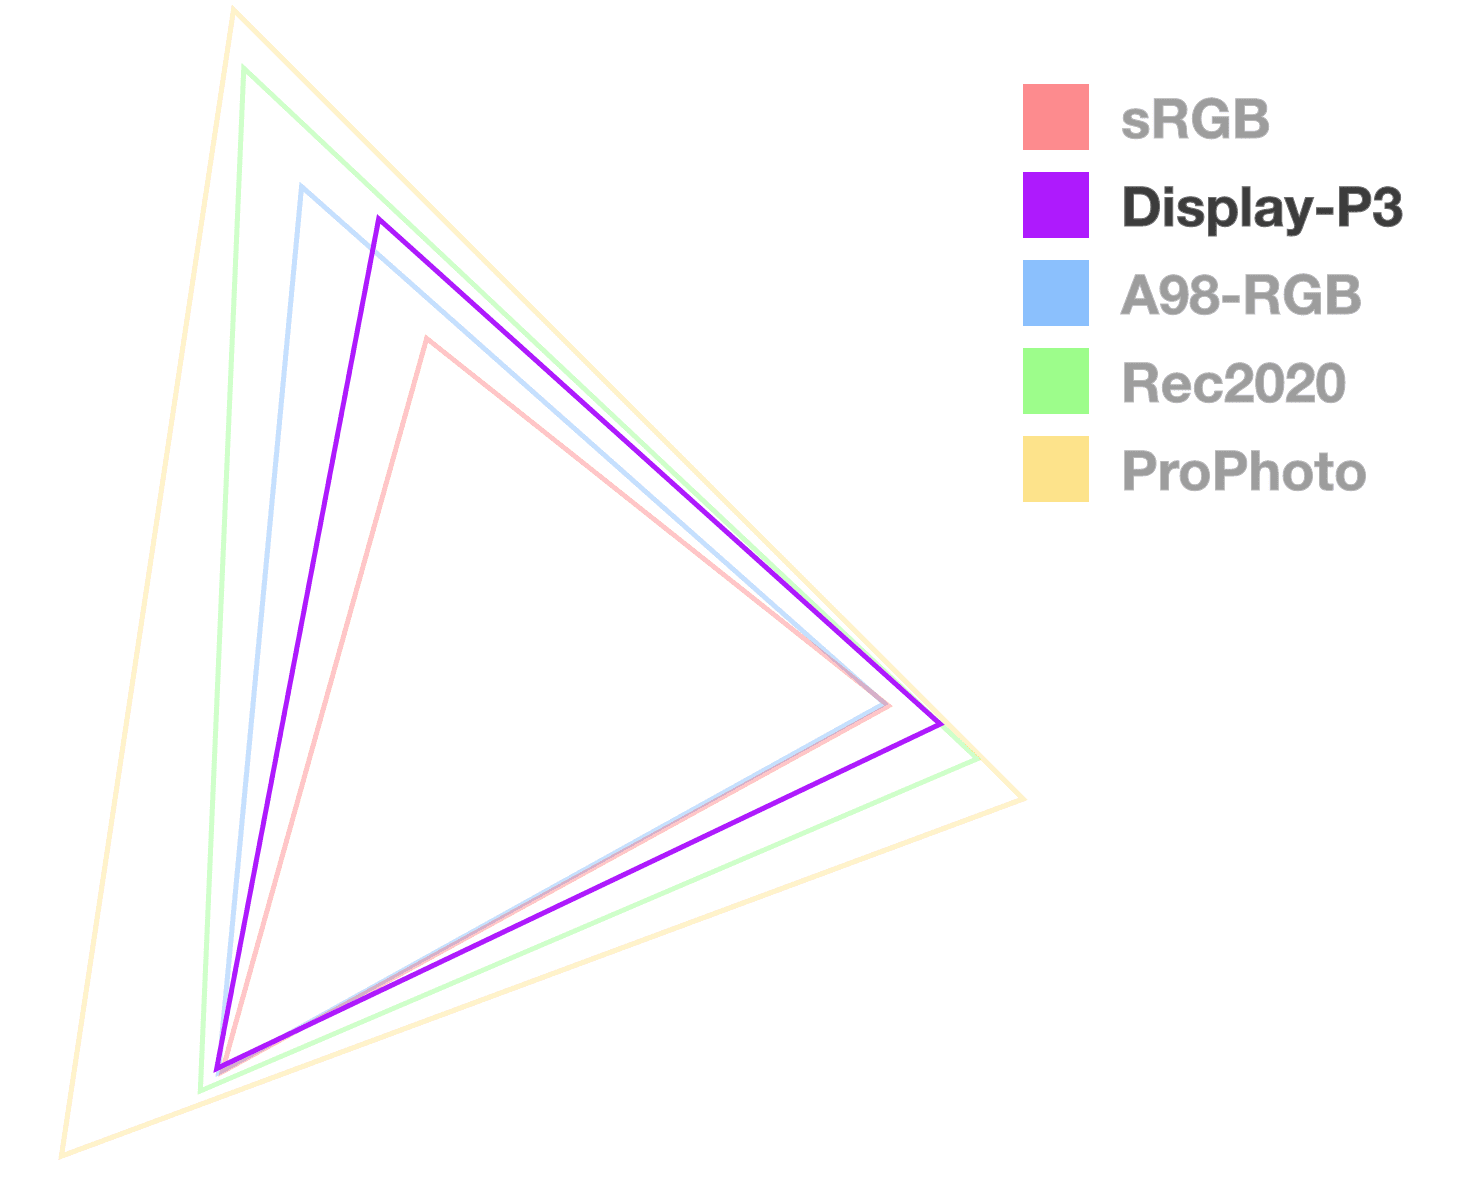 Display P3-driehoek is de enige die volledig ondoorzichtig is, om de grootte van het kleurengamma te helpen visualiseren. Het lijkt de 2e van de kleinste.